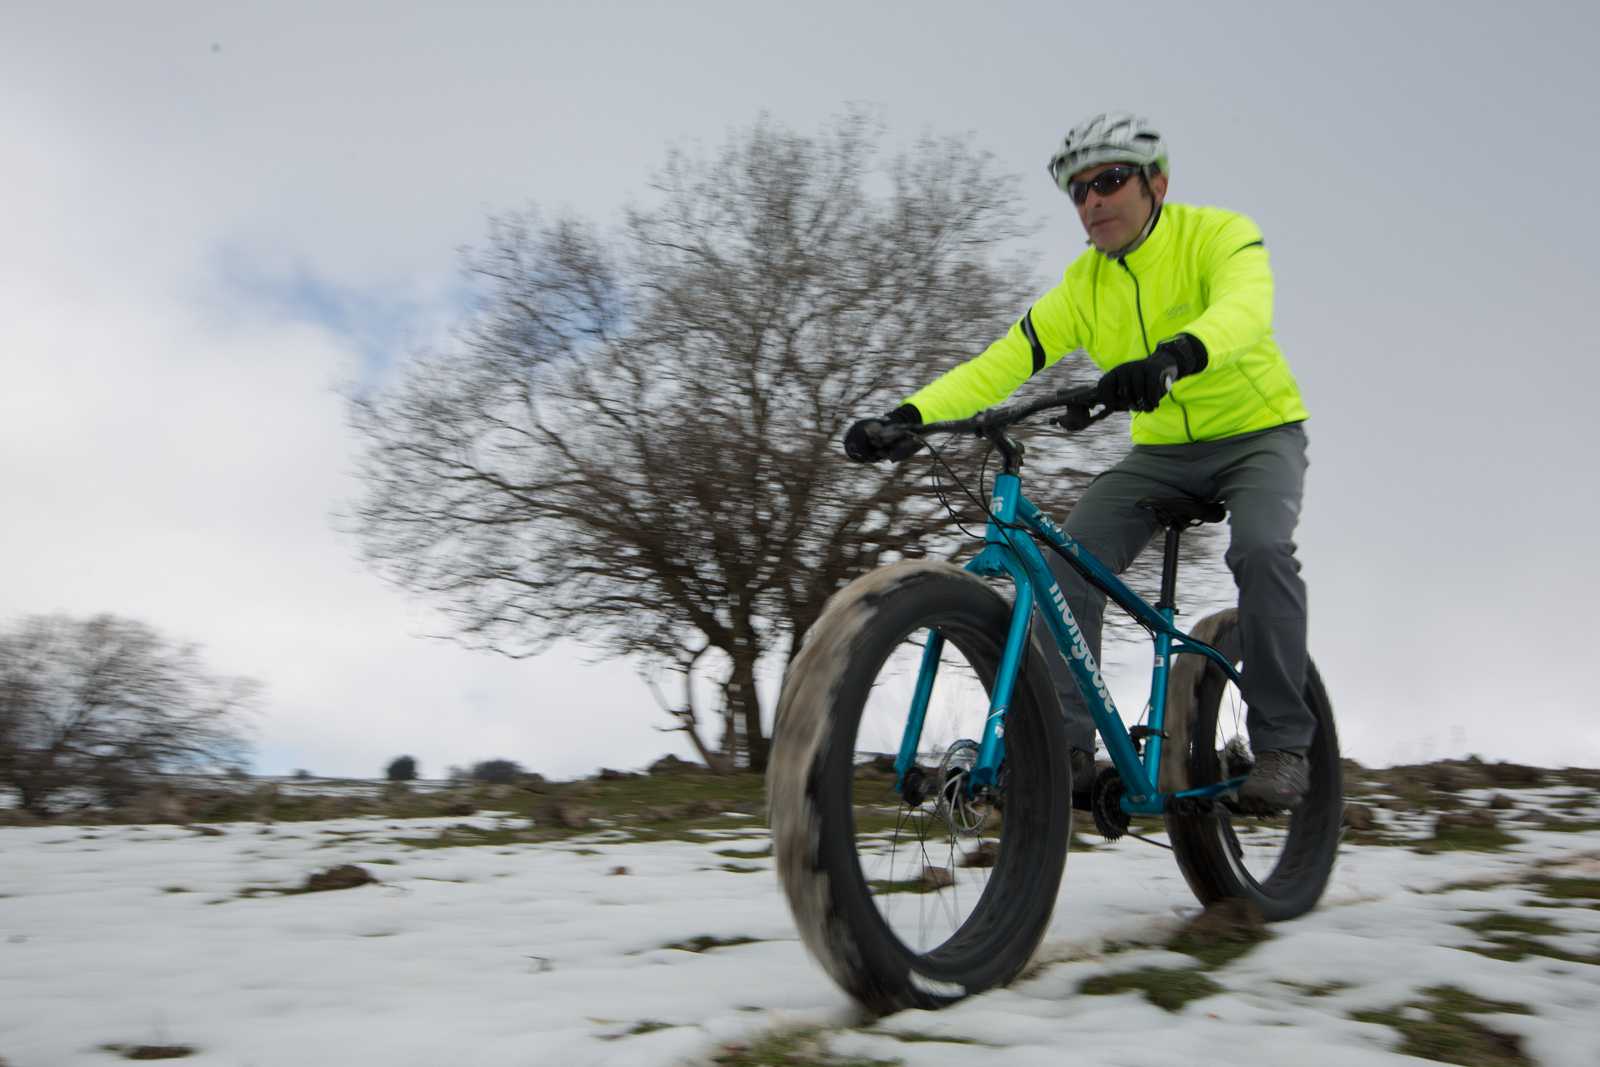 מבחן אופניים MONGOOSE ARGUS. שלג, דיונות וטיילת. האופניים שמשכו הכי הרבה תשומת לב - EVER! צילום: תומר פדר